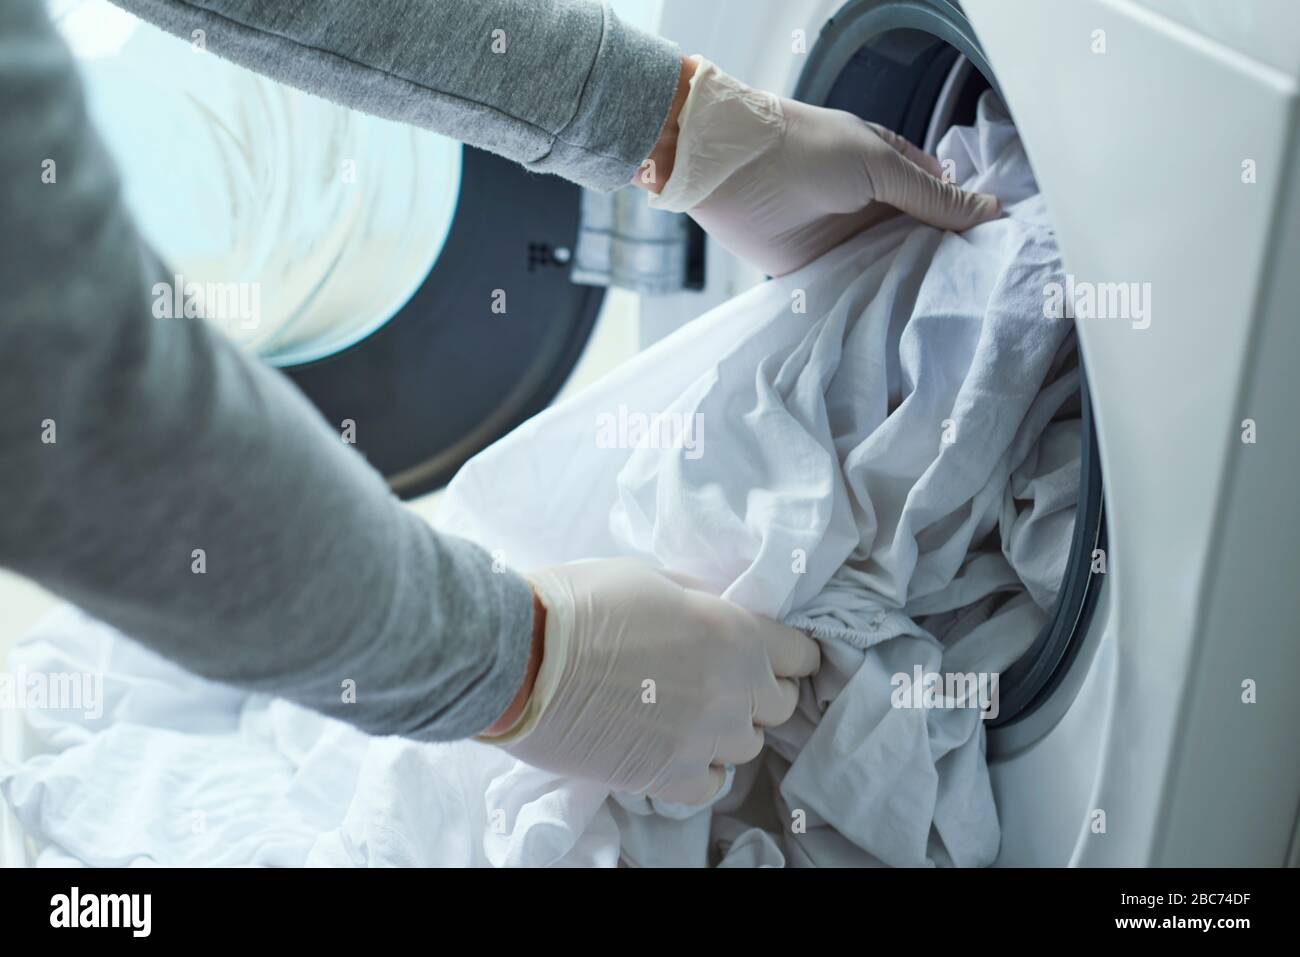 Nahaufnahme eines jungen kaukasischen Mannes, der Latexhandschuhe trägt und weiße Bettwäsche in die Waschmaschine einbringt Stockfoto